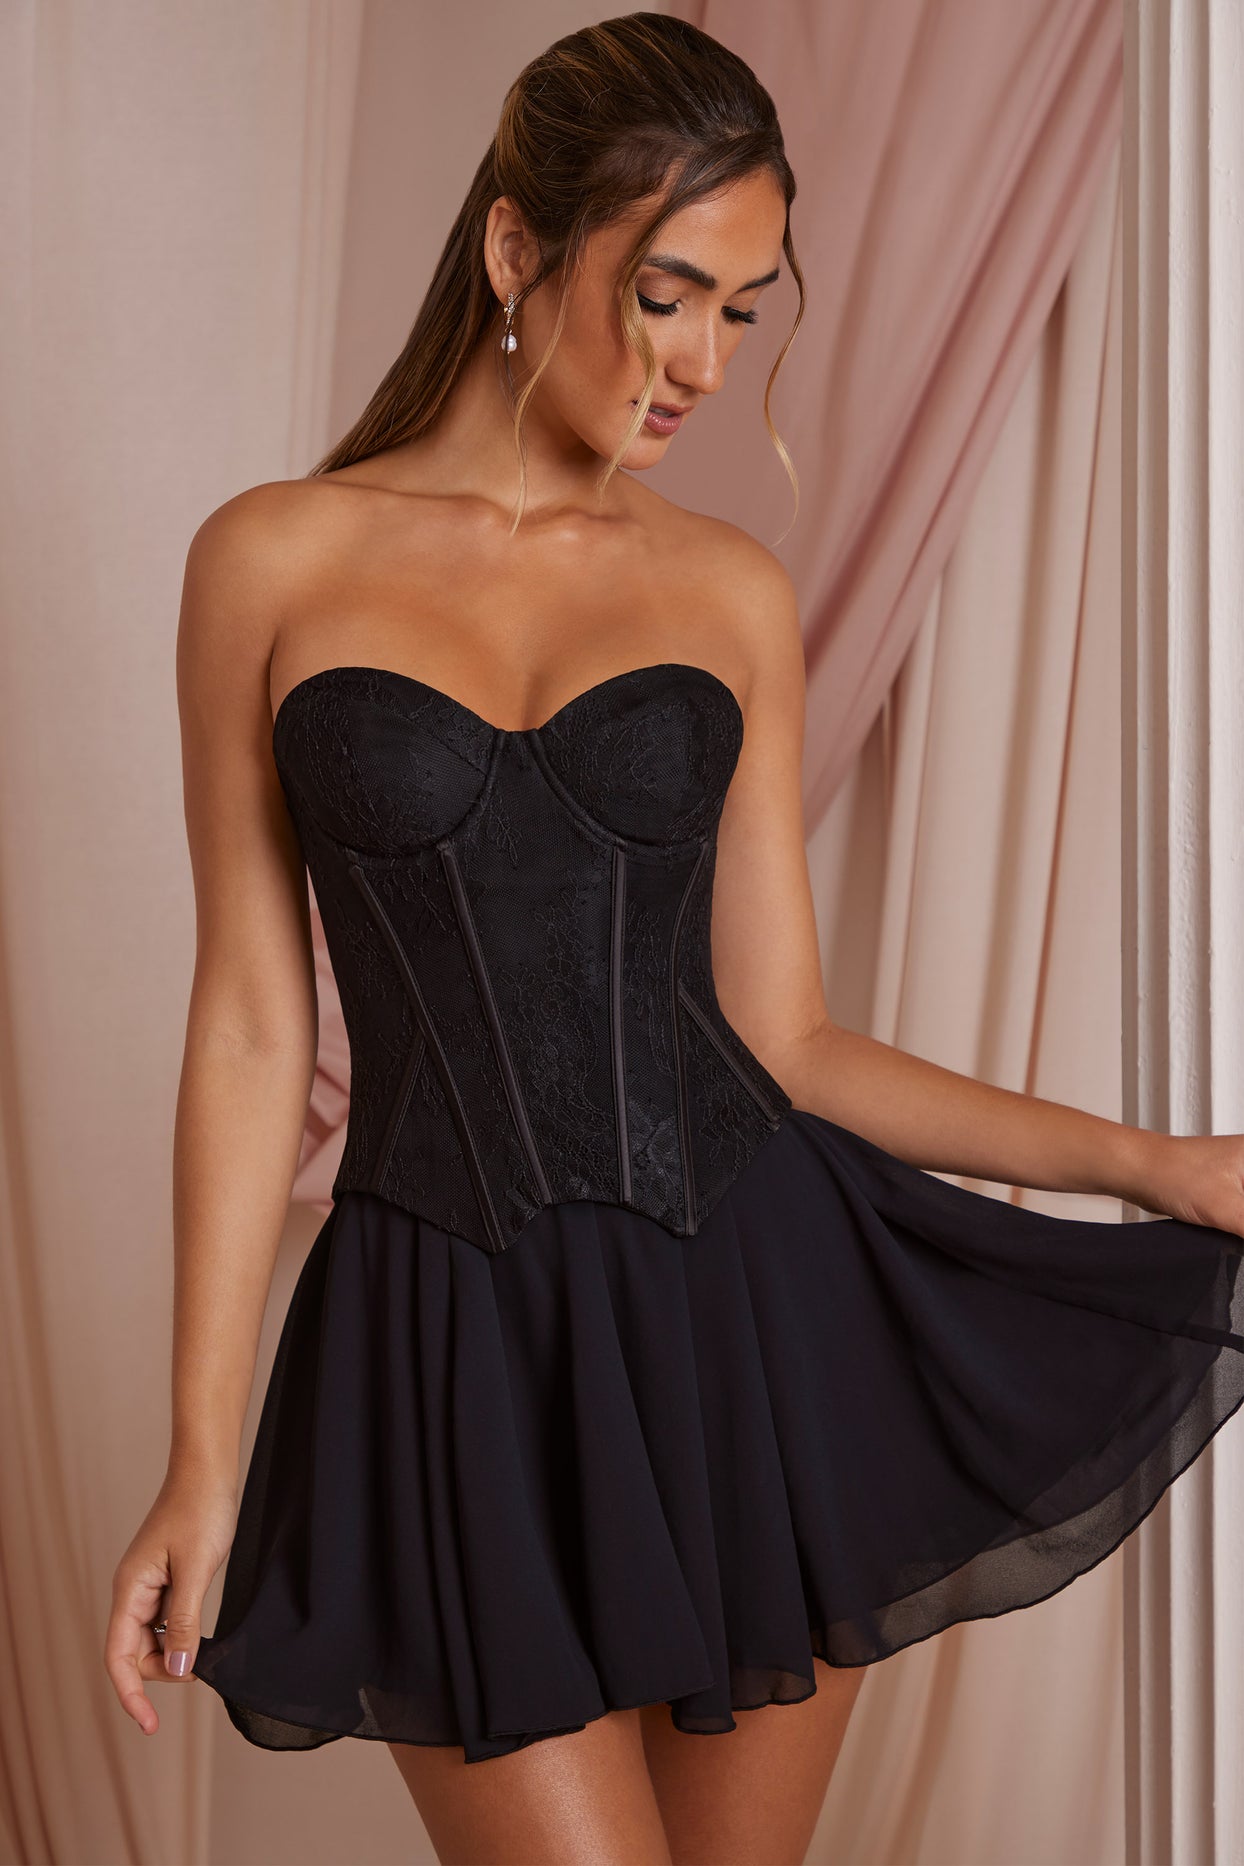 Mini-robe corset sans bretelles en dentelle noire